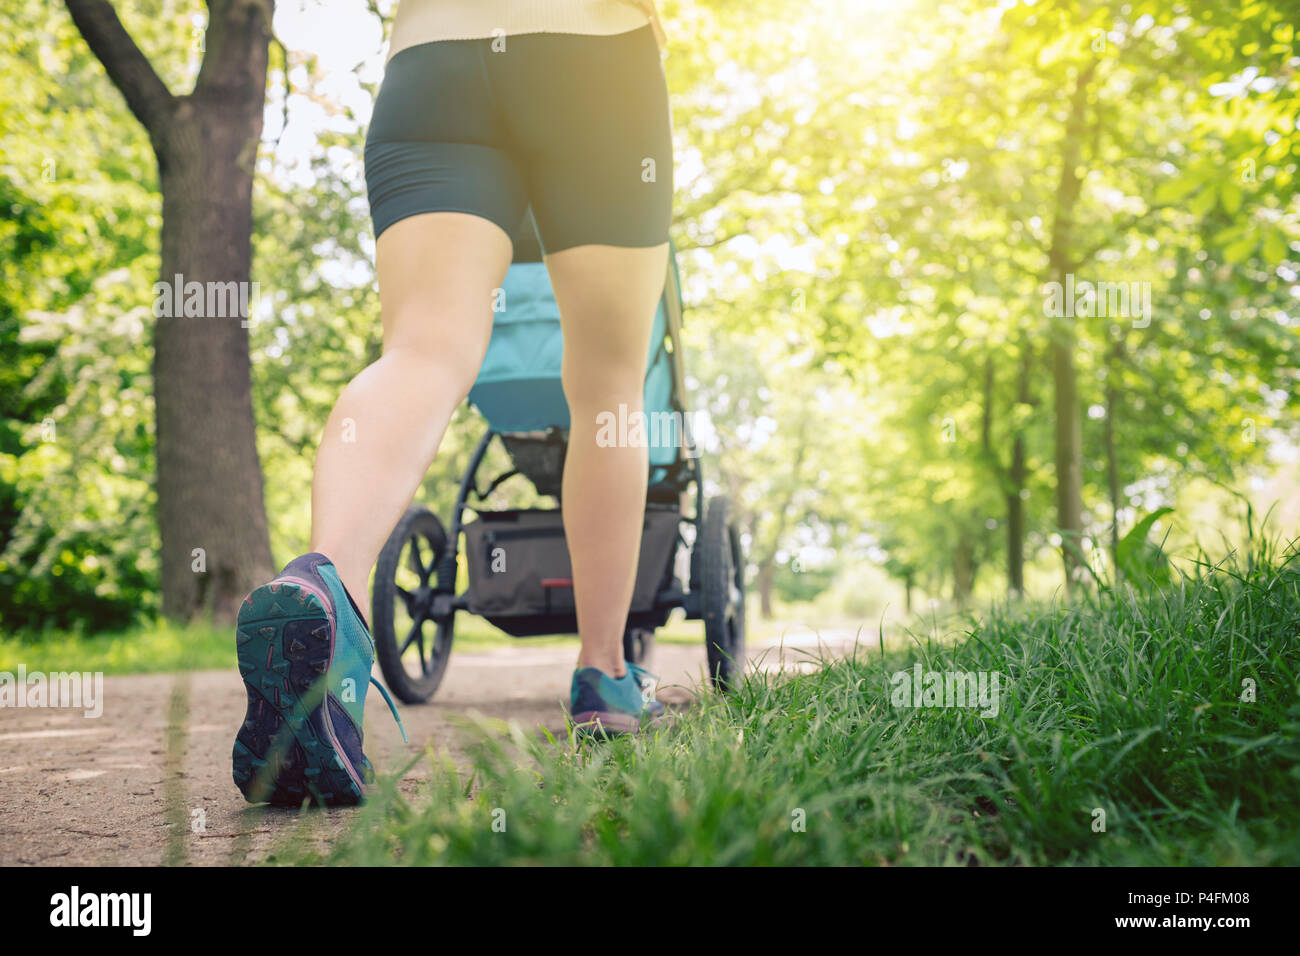 Walking Frau mit Kinderwagen geniessen Sommertag im Park. Joggen oder Walken supermom, aktive Familie mit Baby Jogger. Stockfoto